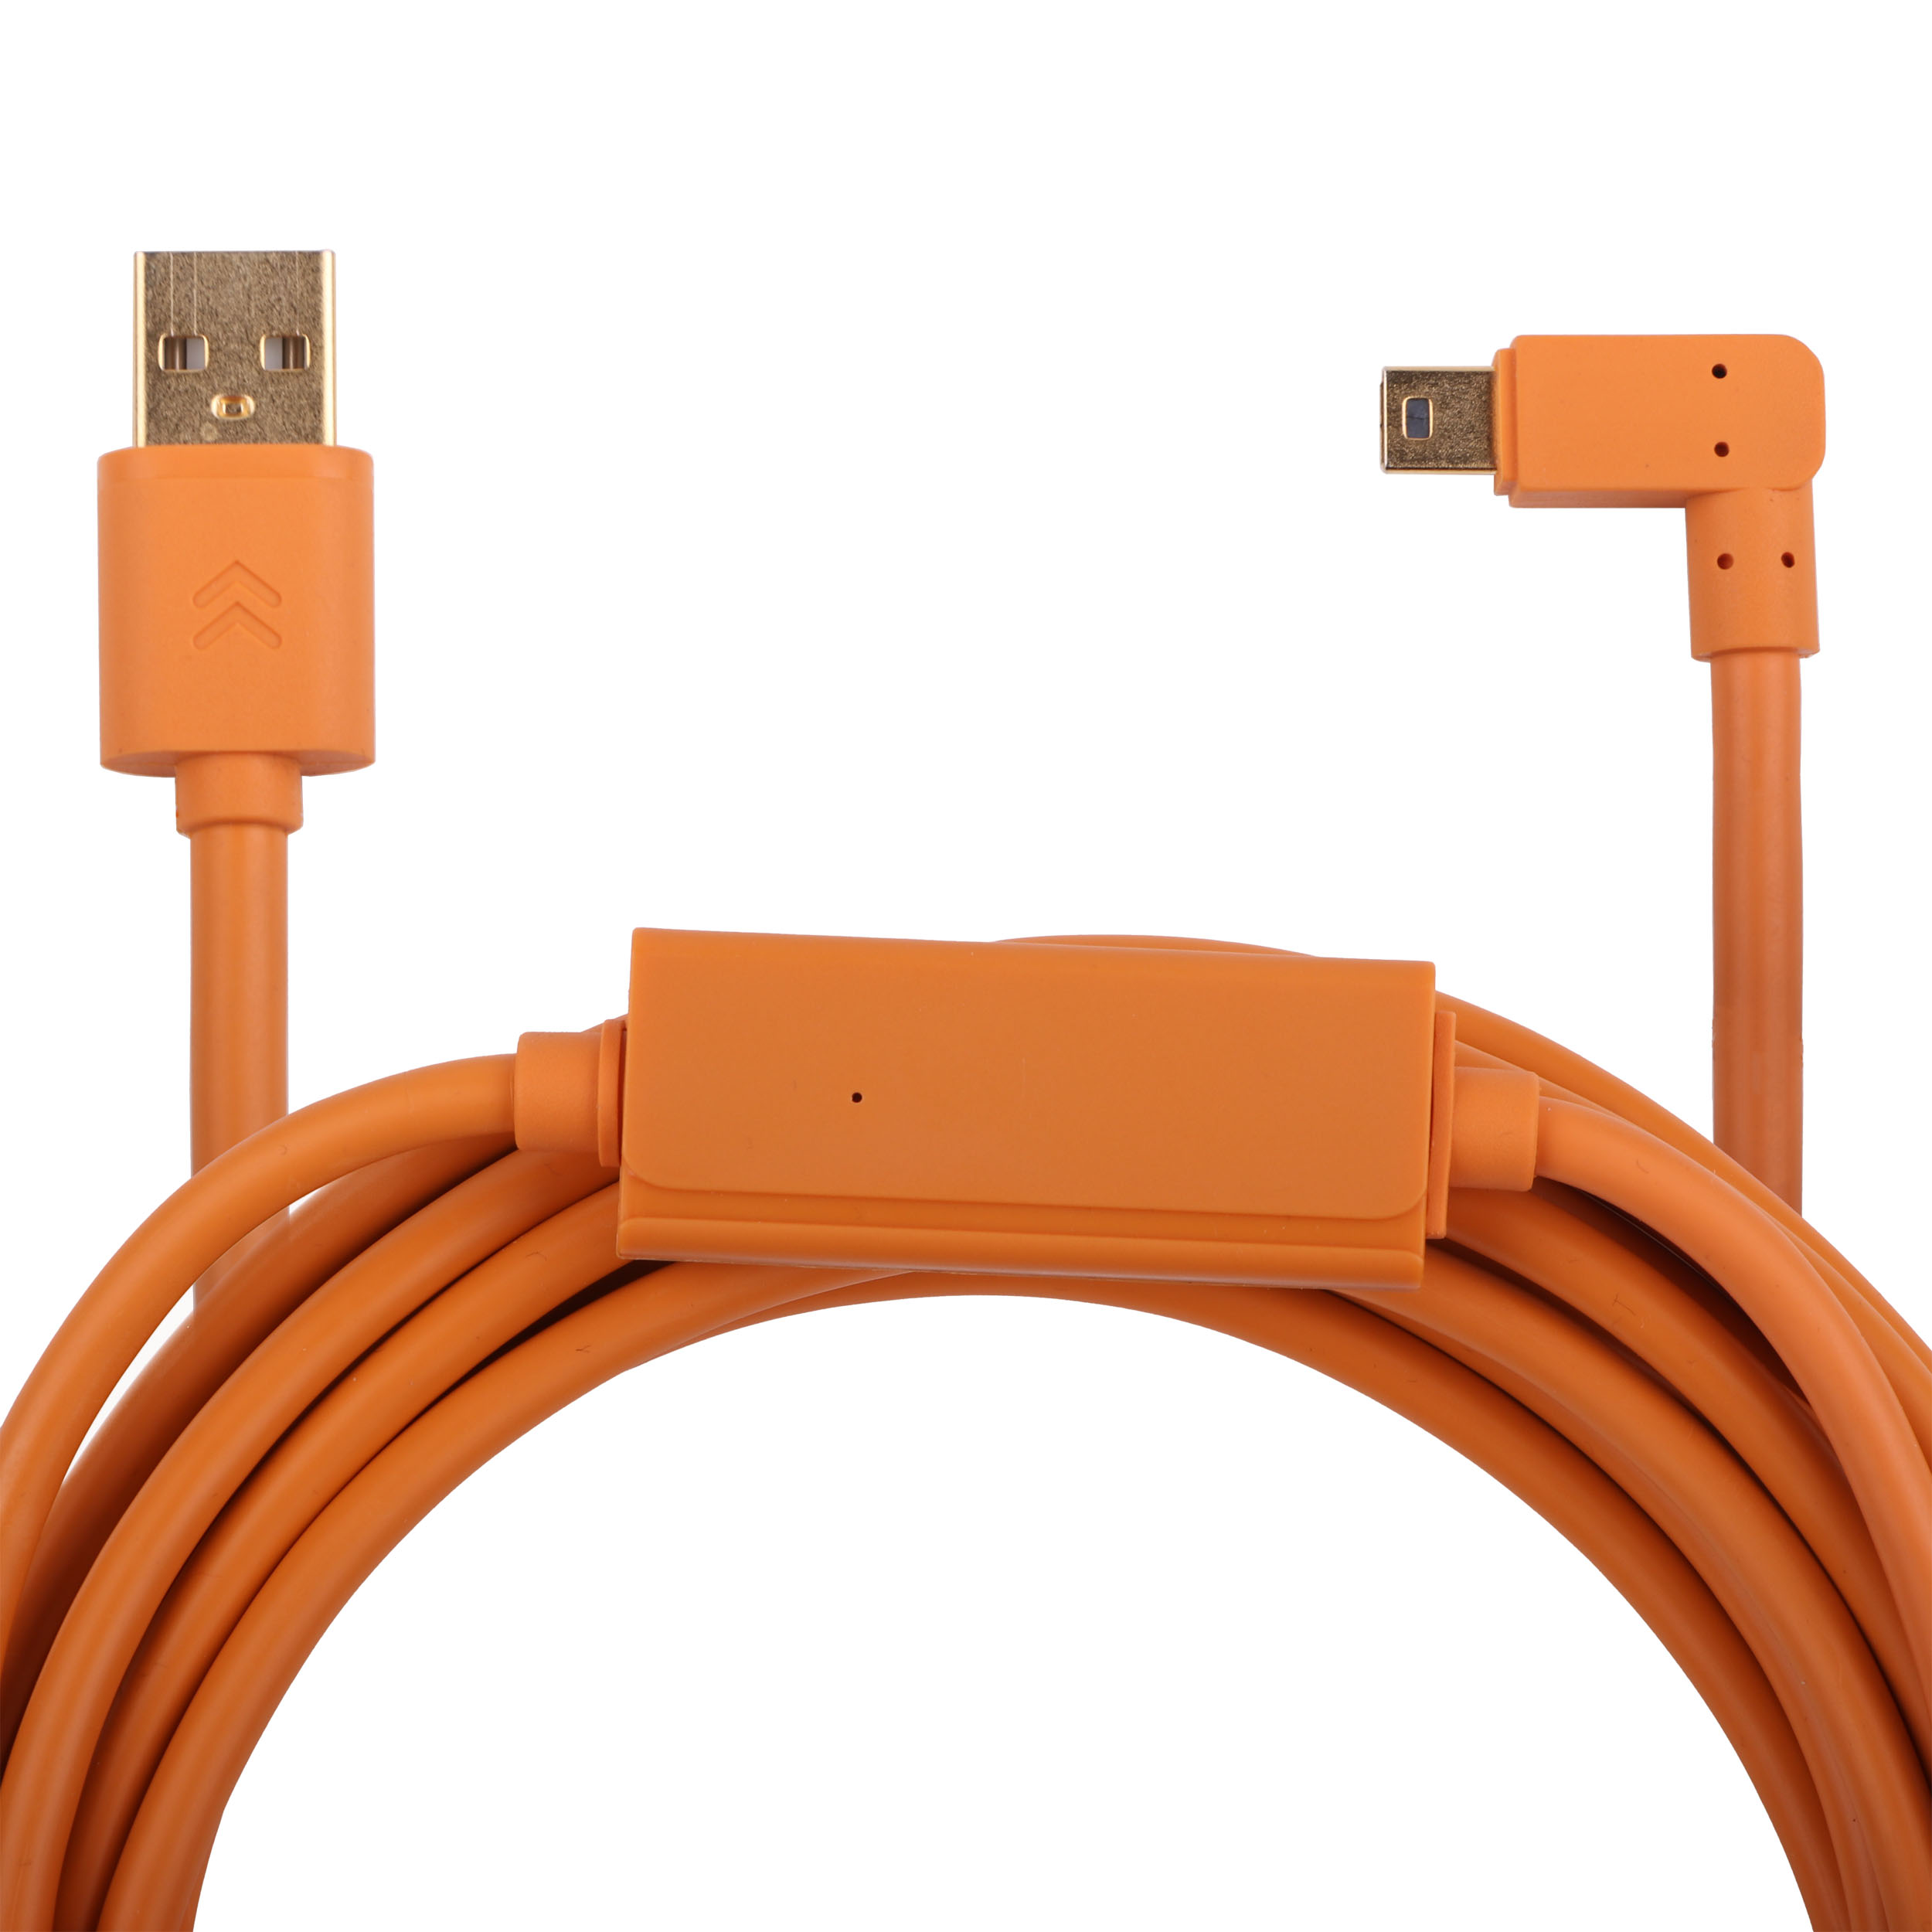 کابل تبدیل USB به MiniUSB کد 01 طول 5 متر